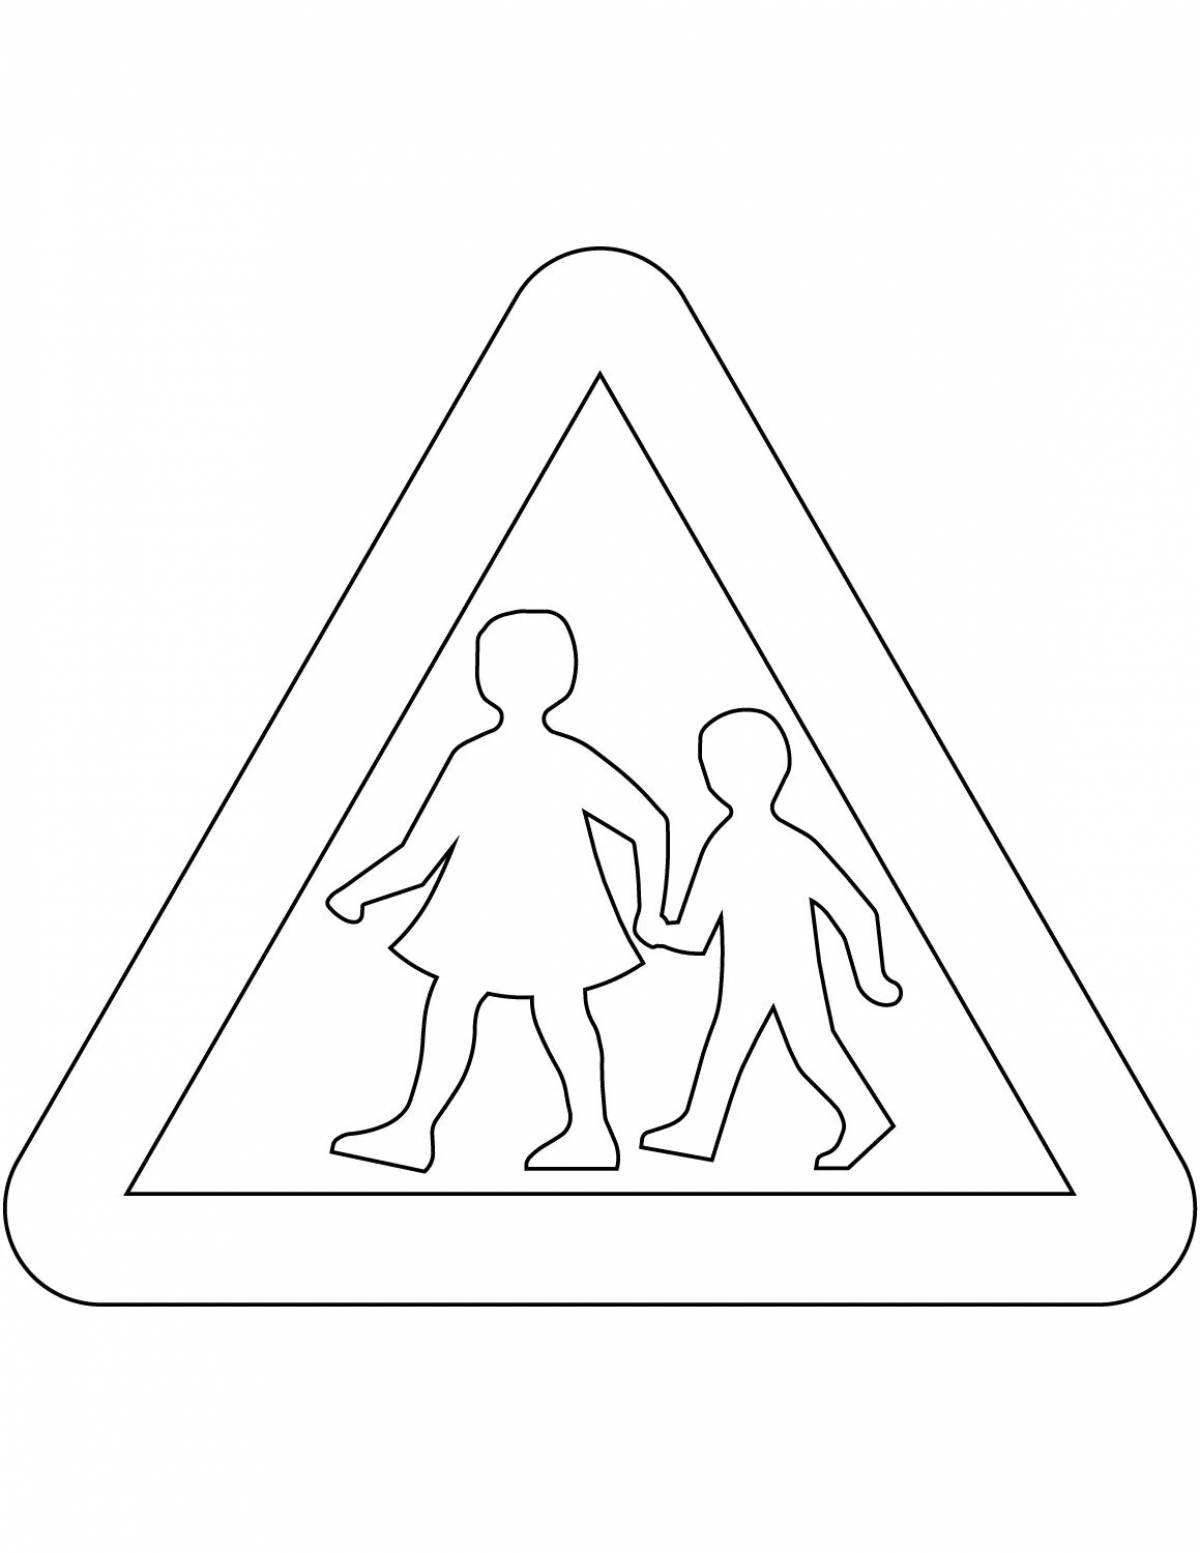 Дорожные знаки для детей дошкольного возраста по пдд #17